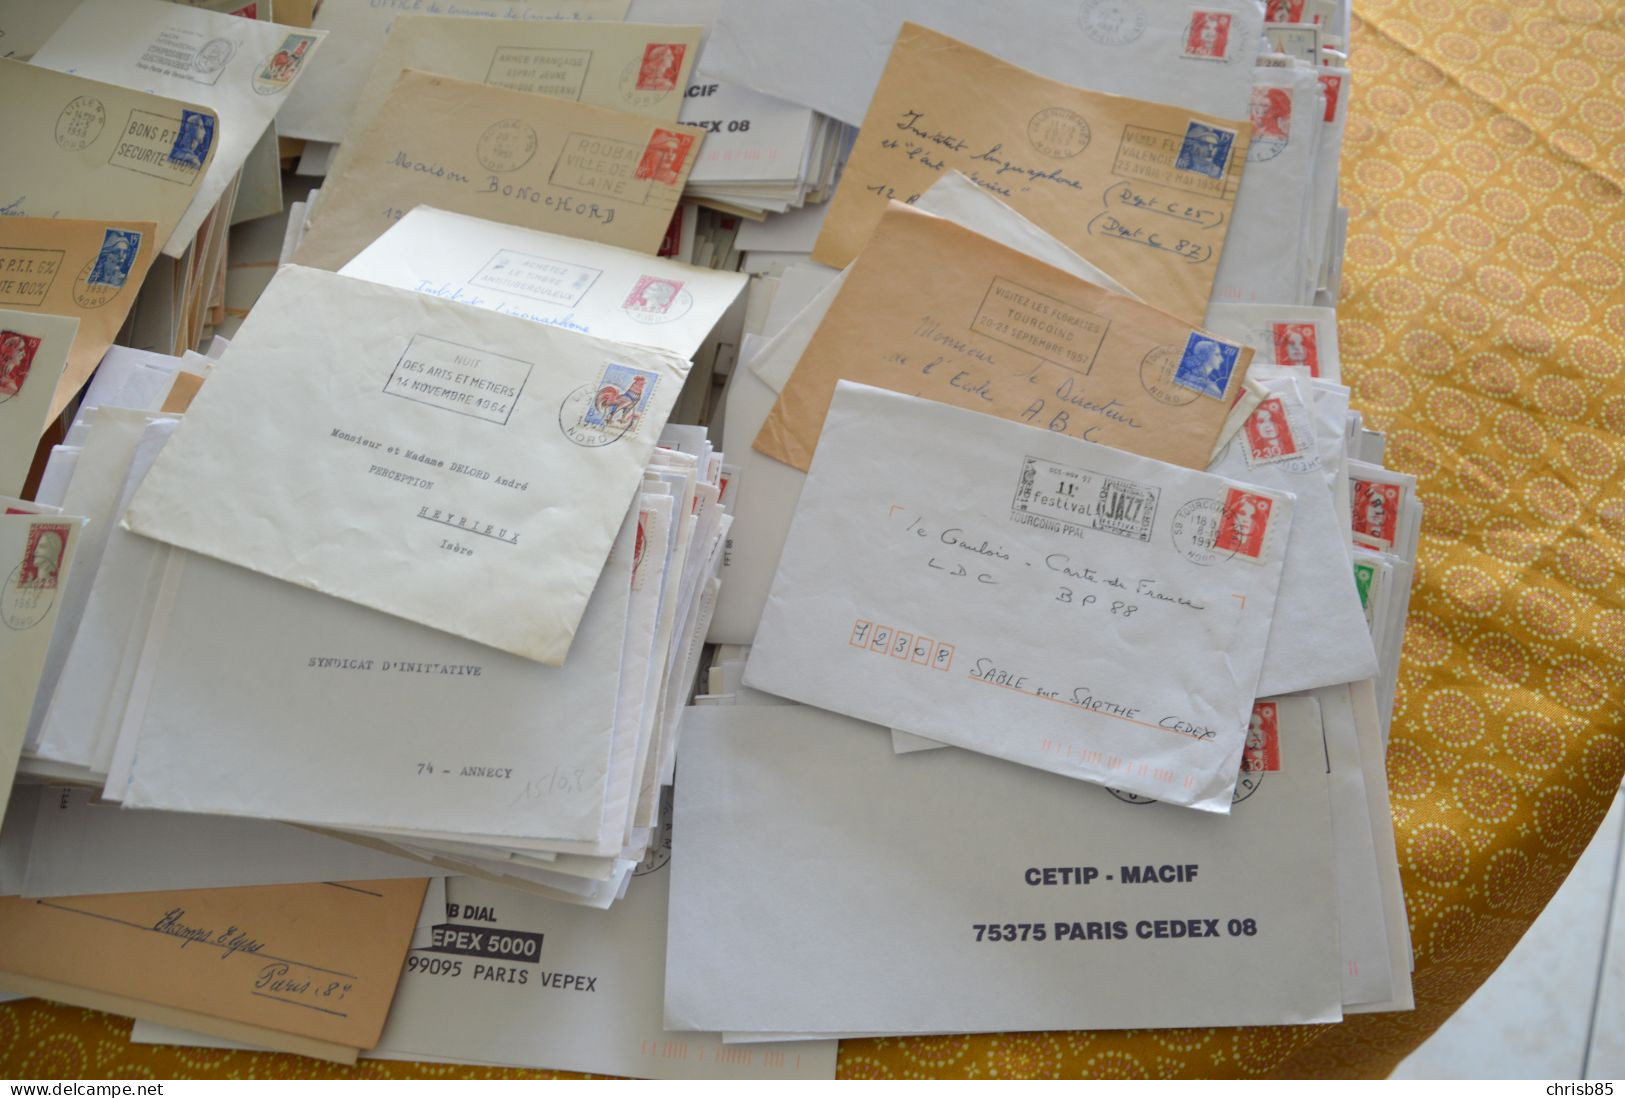 Lot années 1950 1990 oblitérations Département du  NORD 59 environ 2800 Enveloppes entières